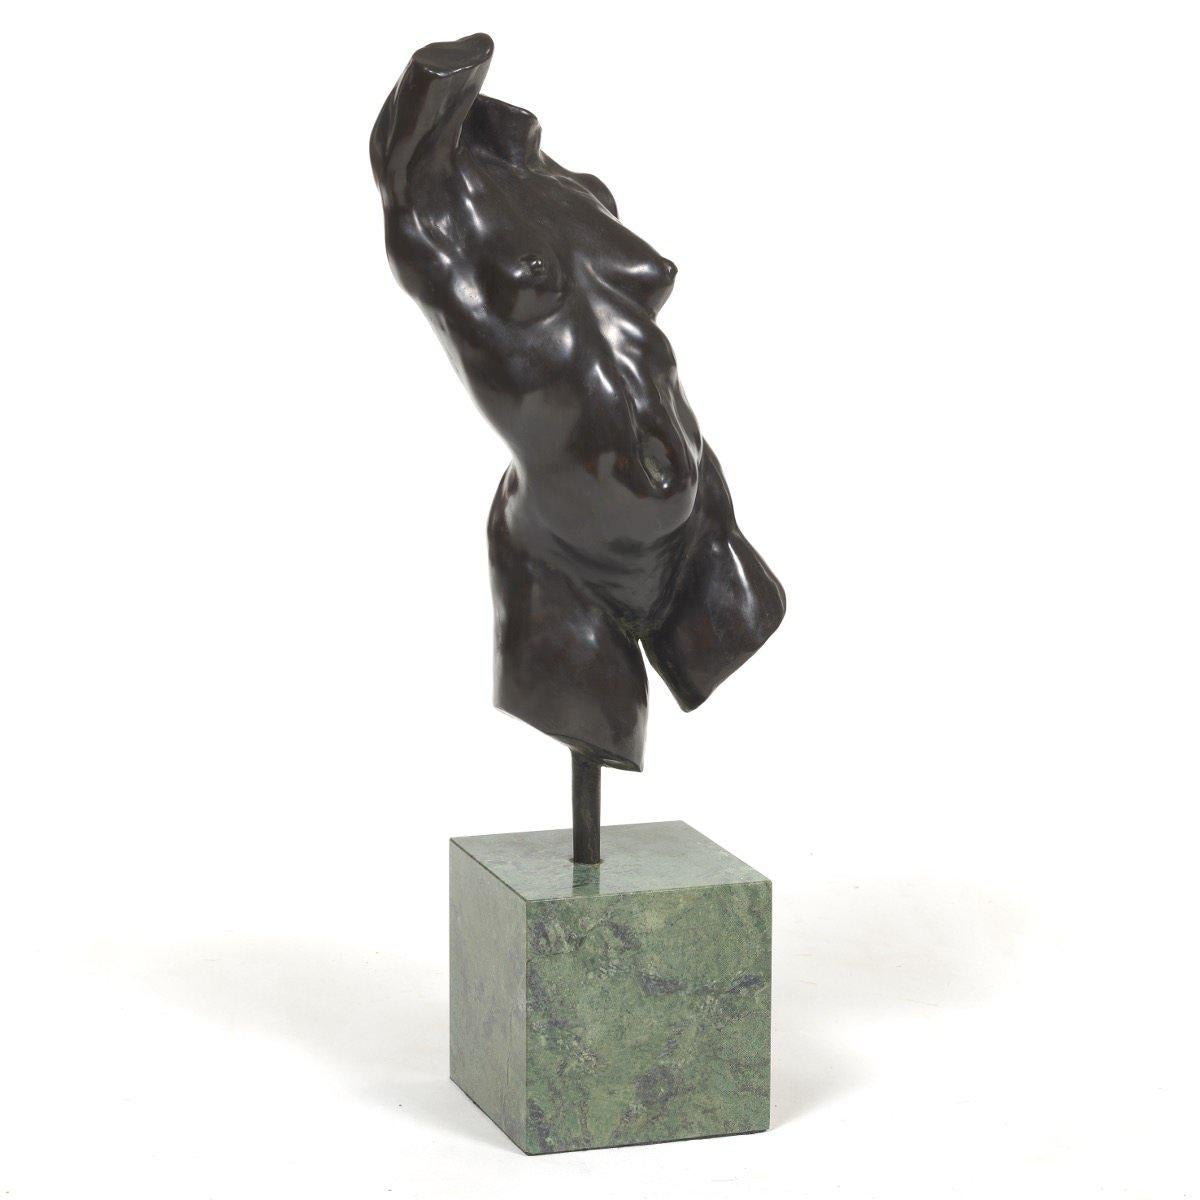 Torso desnudo femenino Escultura de bronce, Artista estadounidense contemporáneo del siglo XX - Sculpture de Alan Cottrill